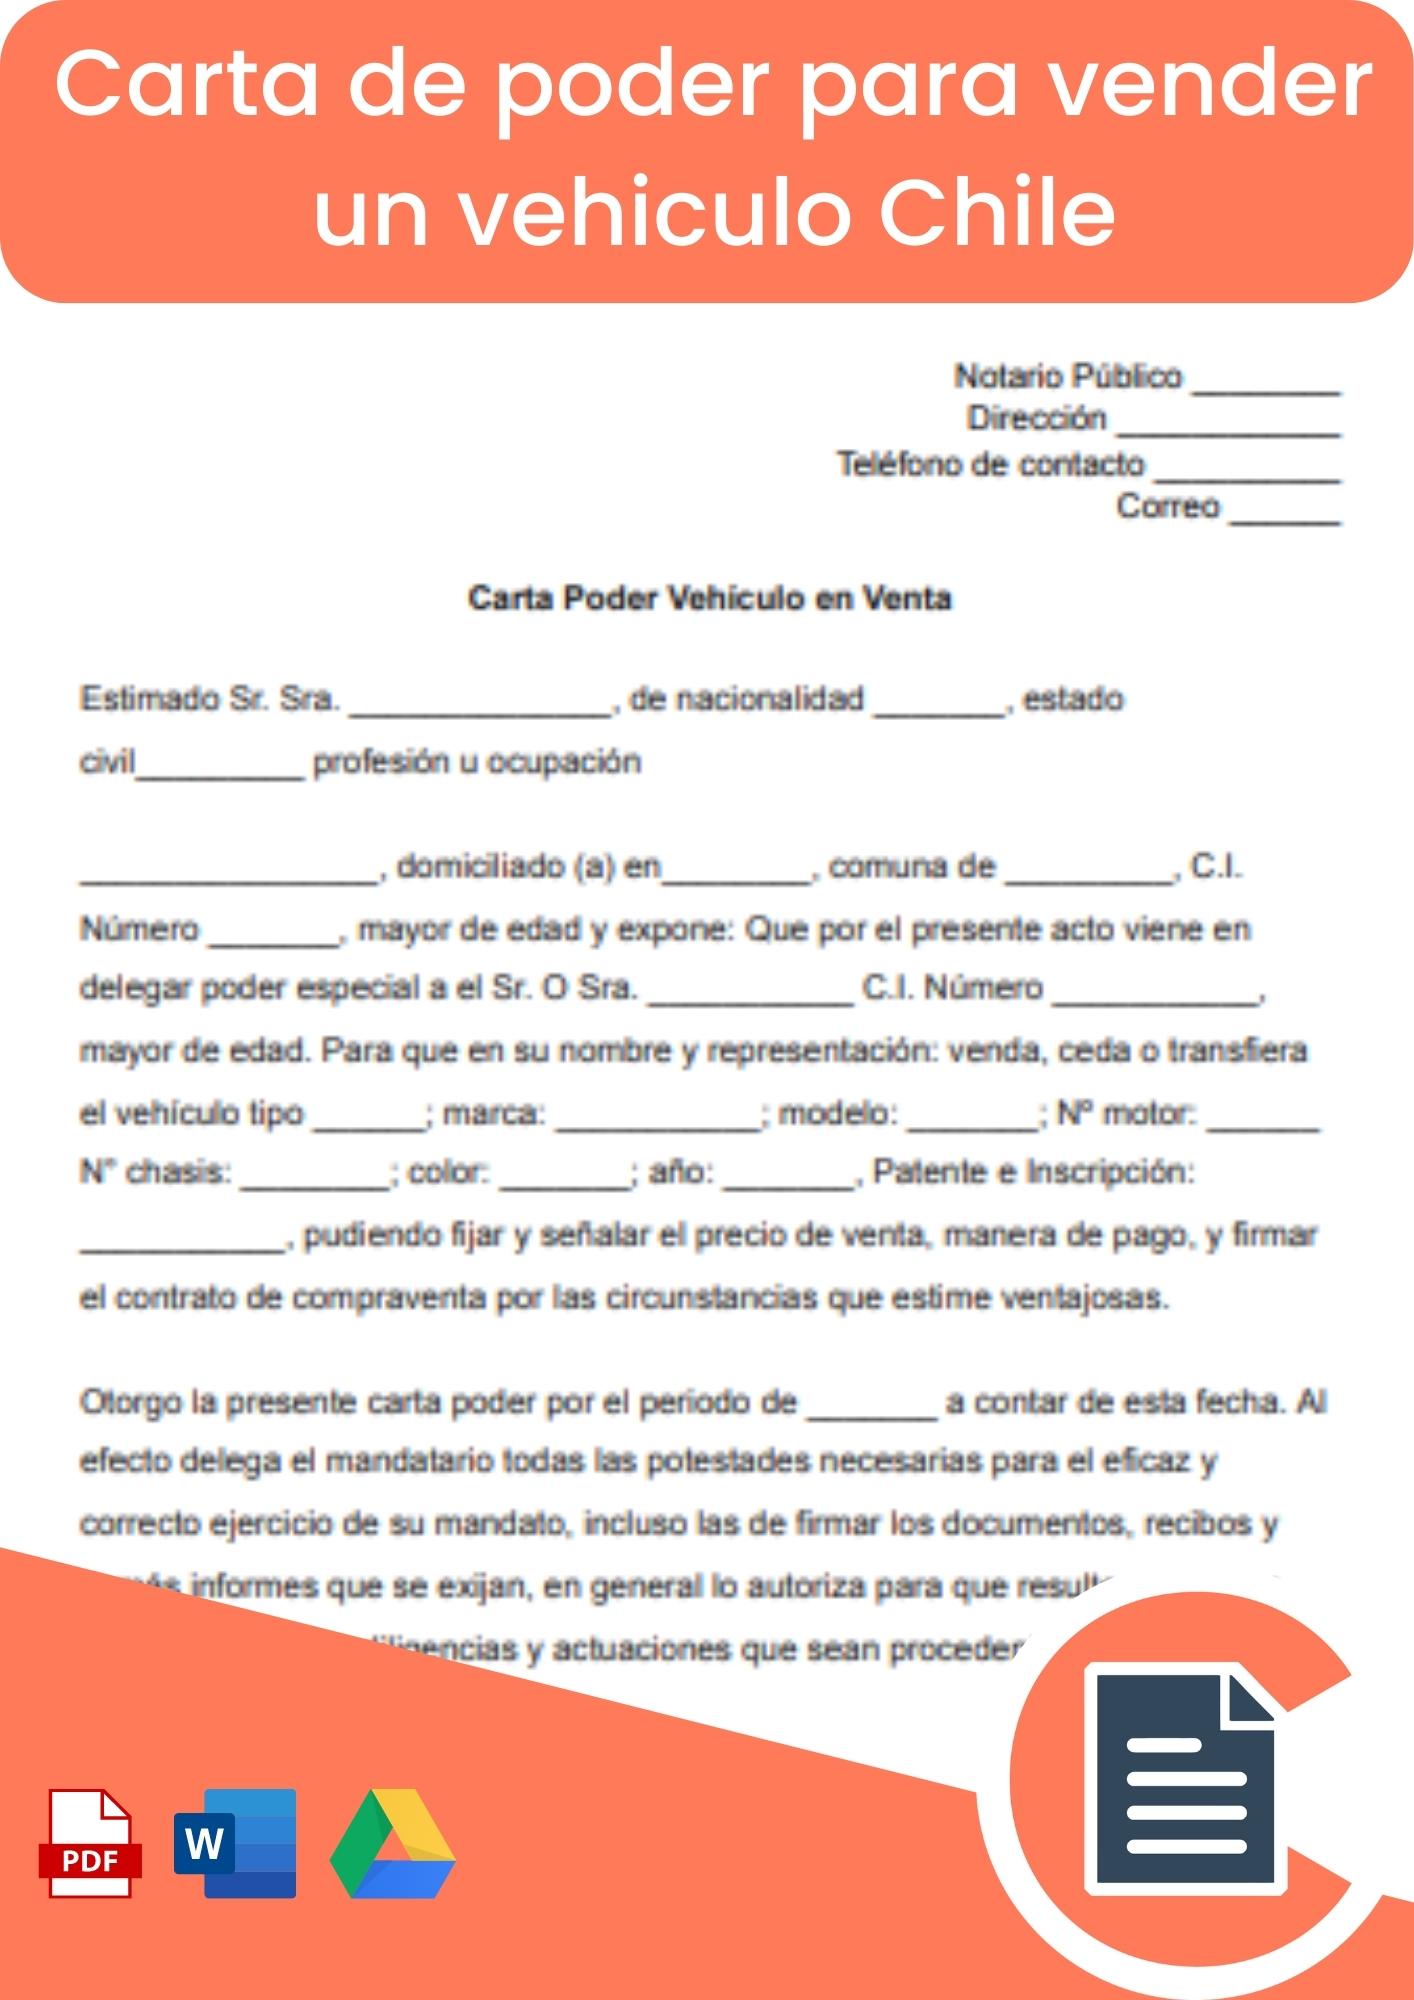 Carta de poder para vender un vehiculo Chile